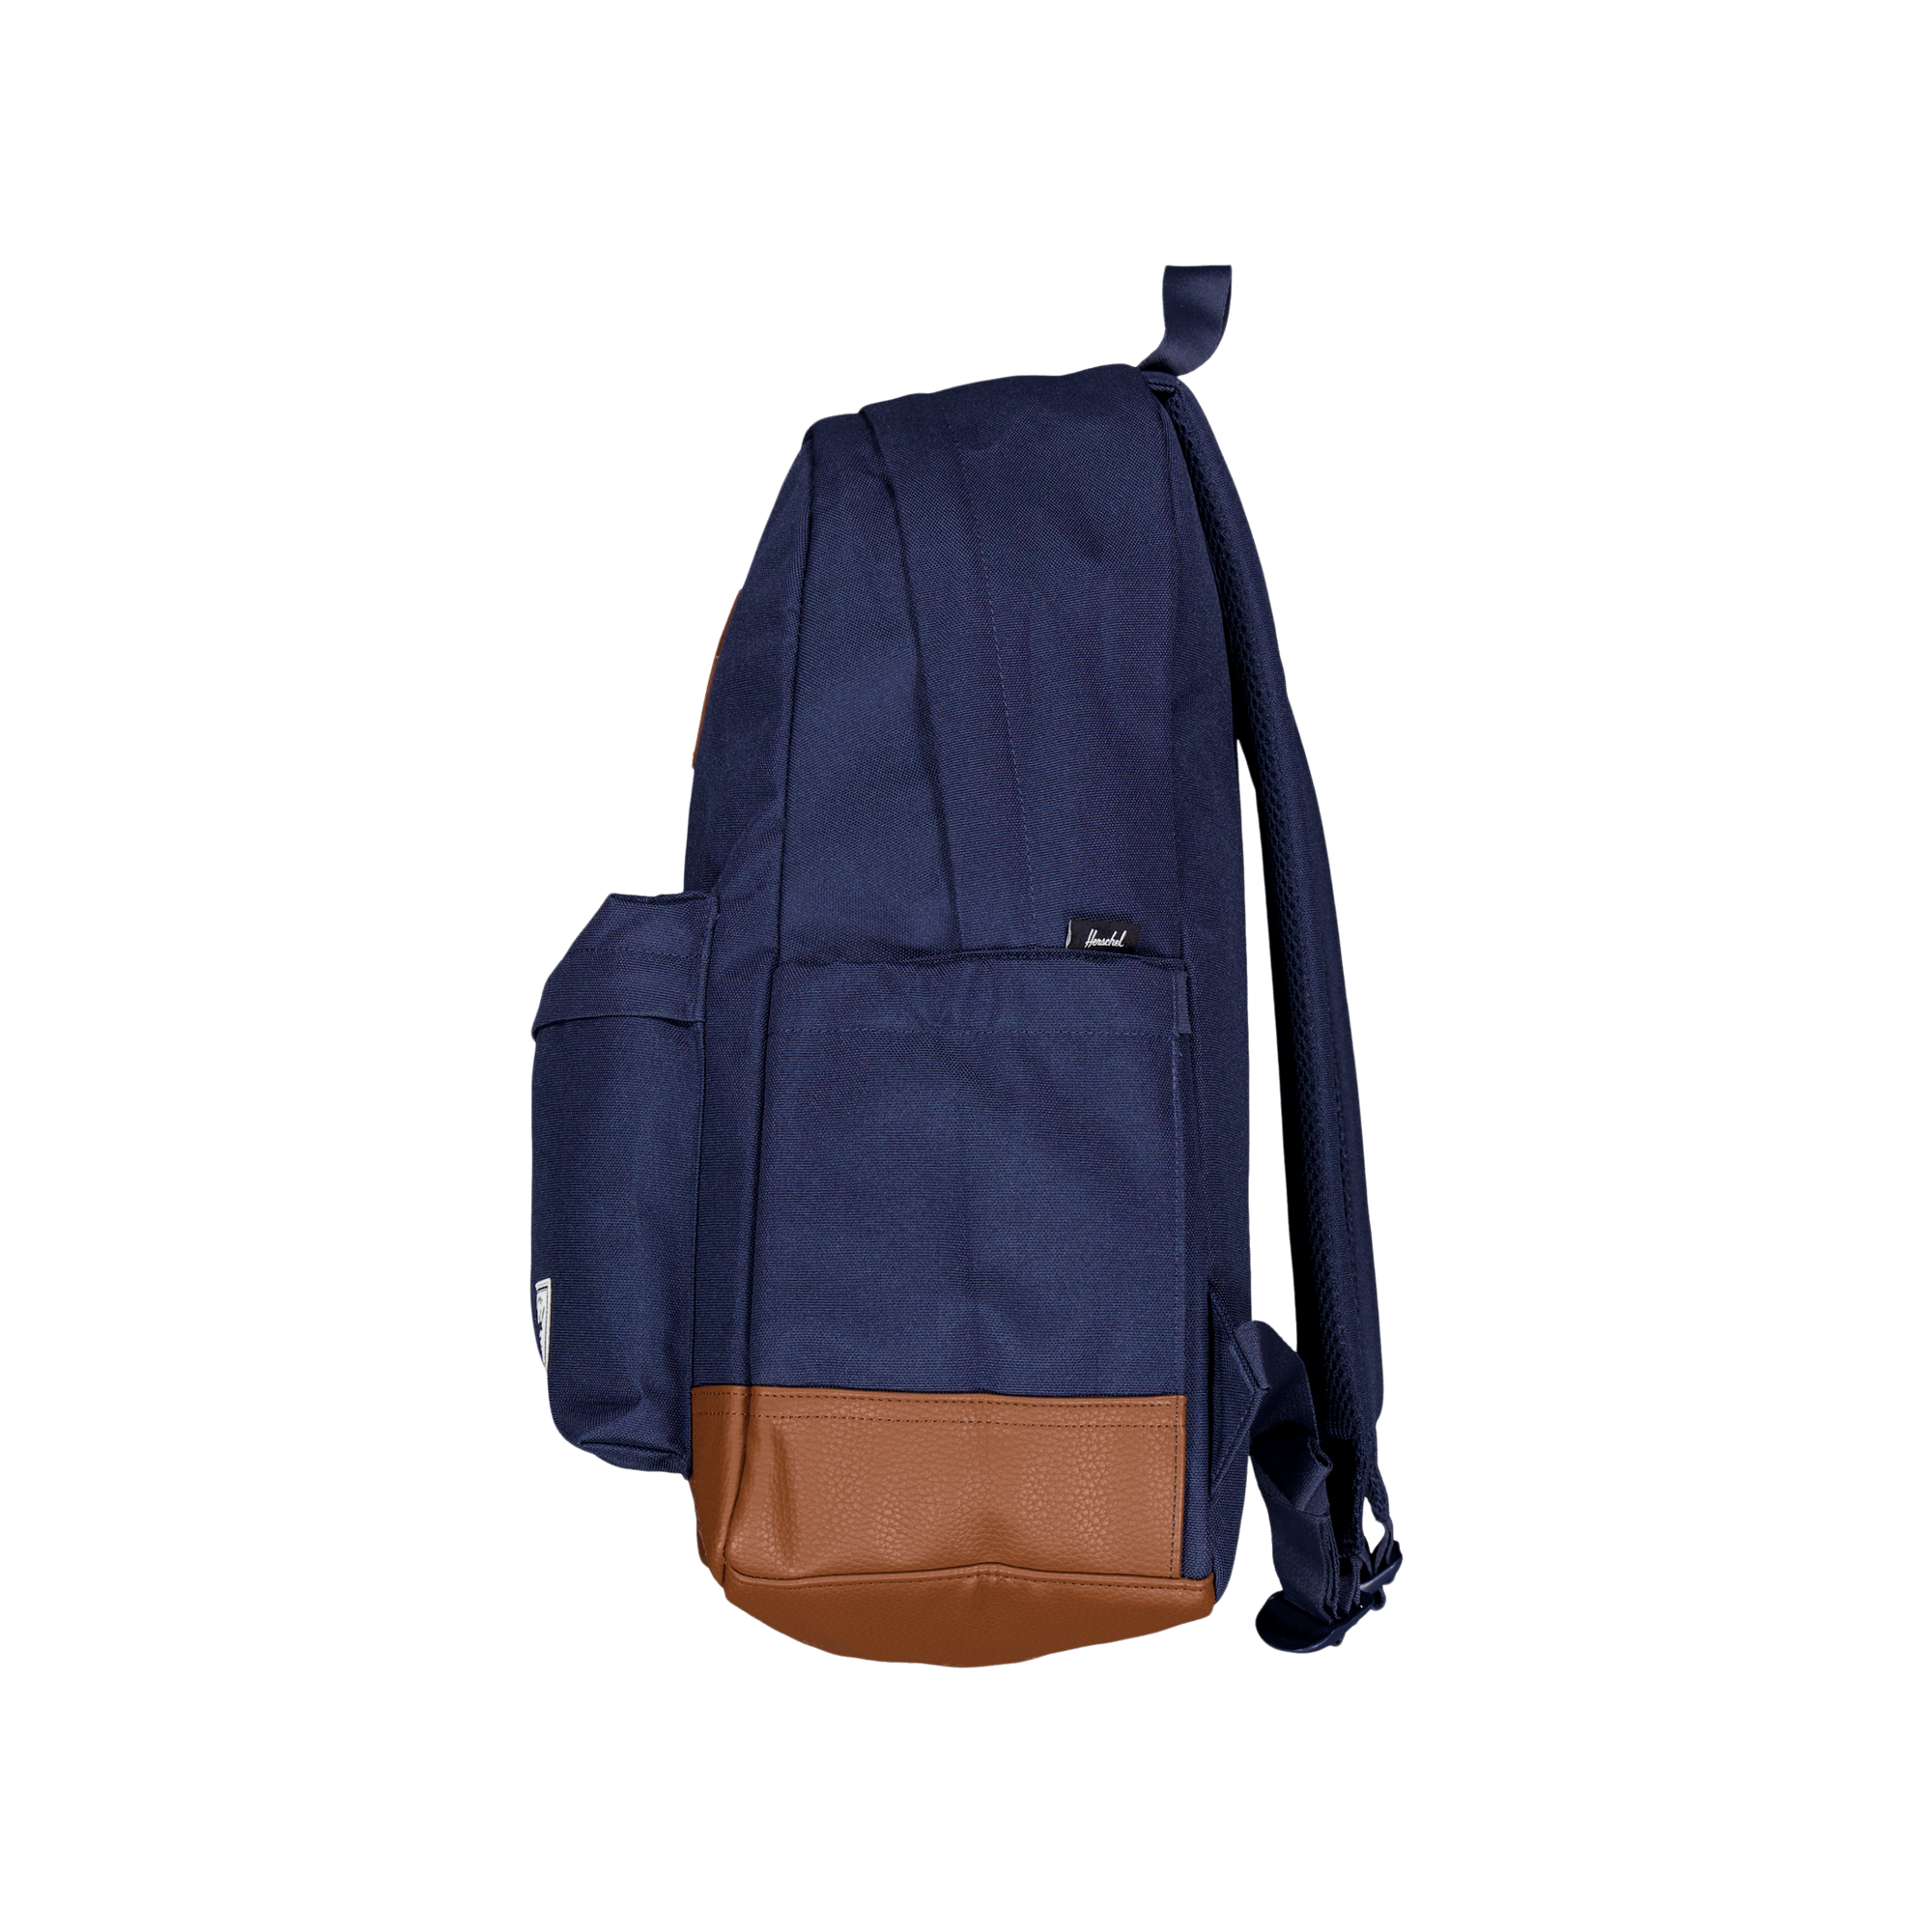 Herschel Heritage Backpack Navy/tan